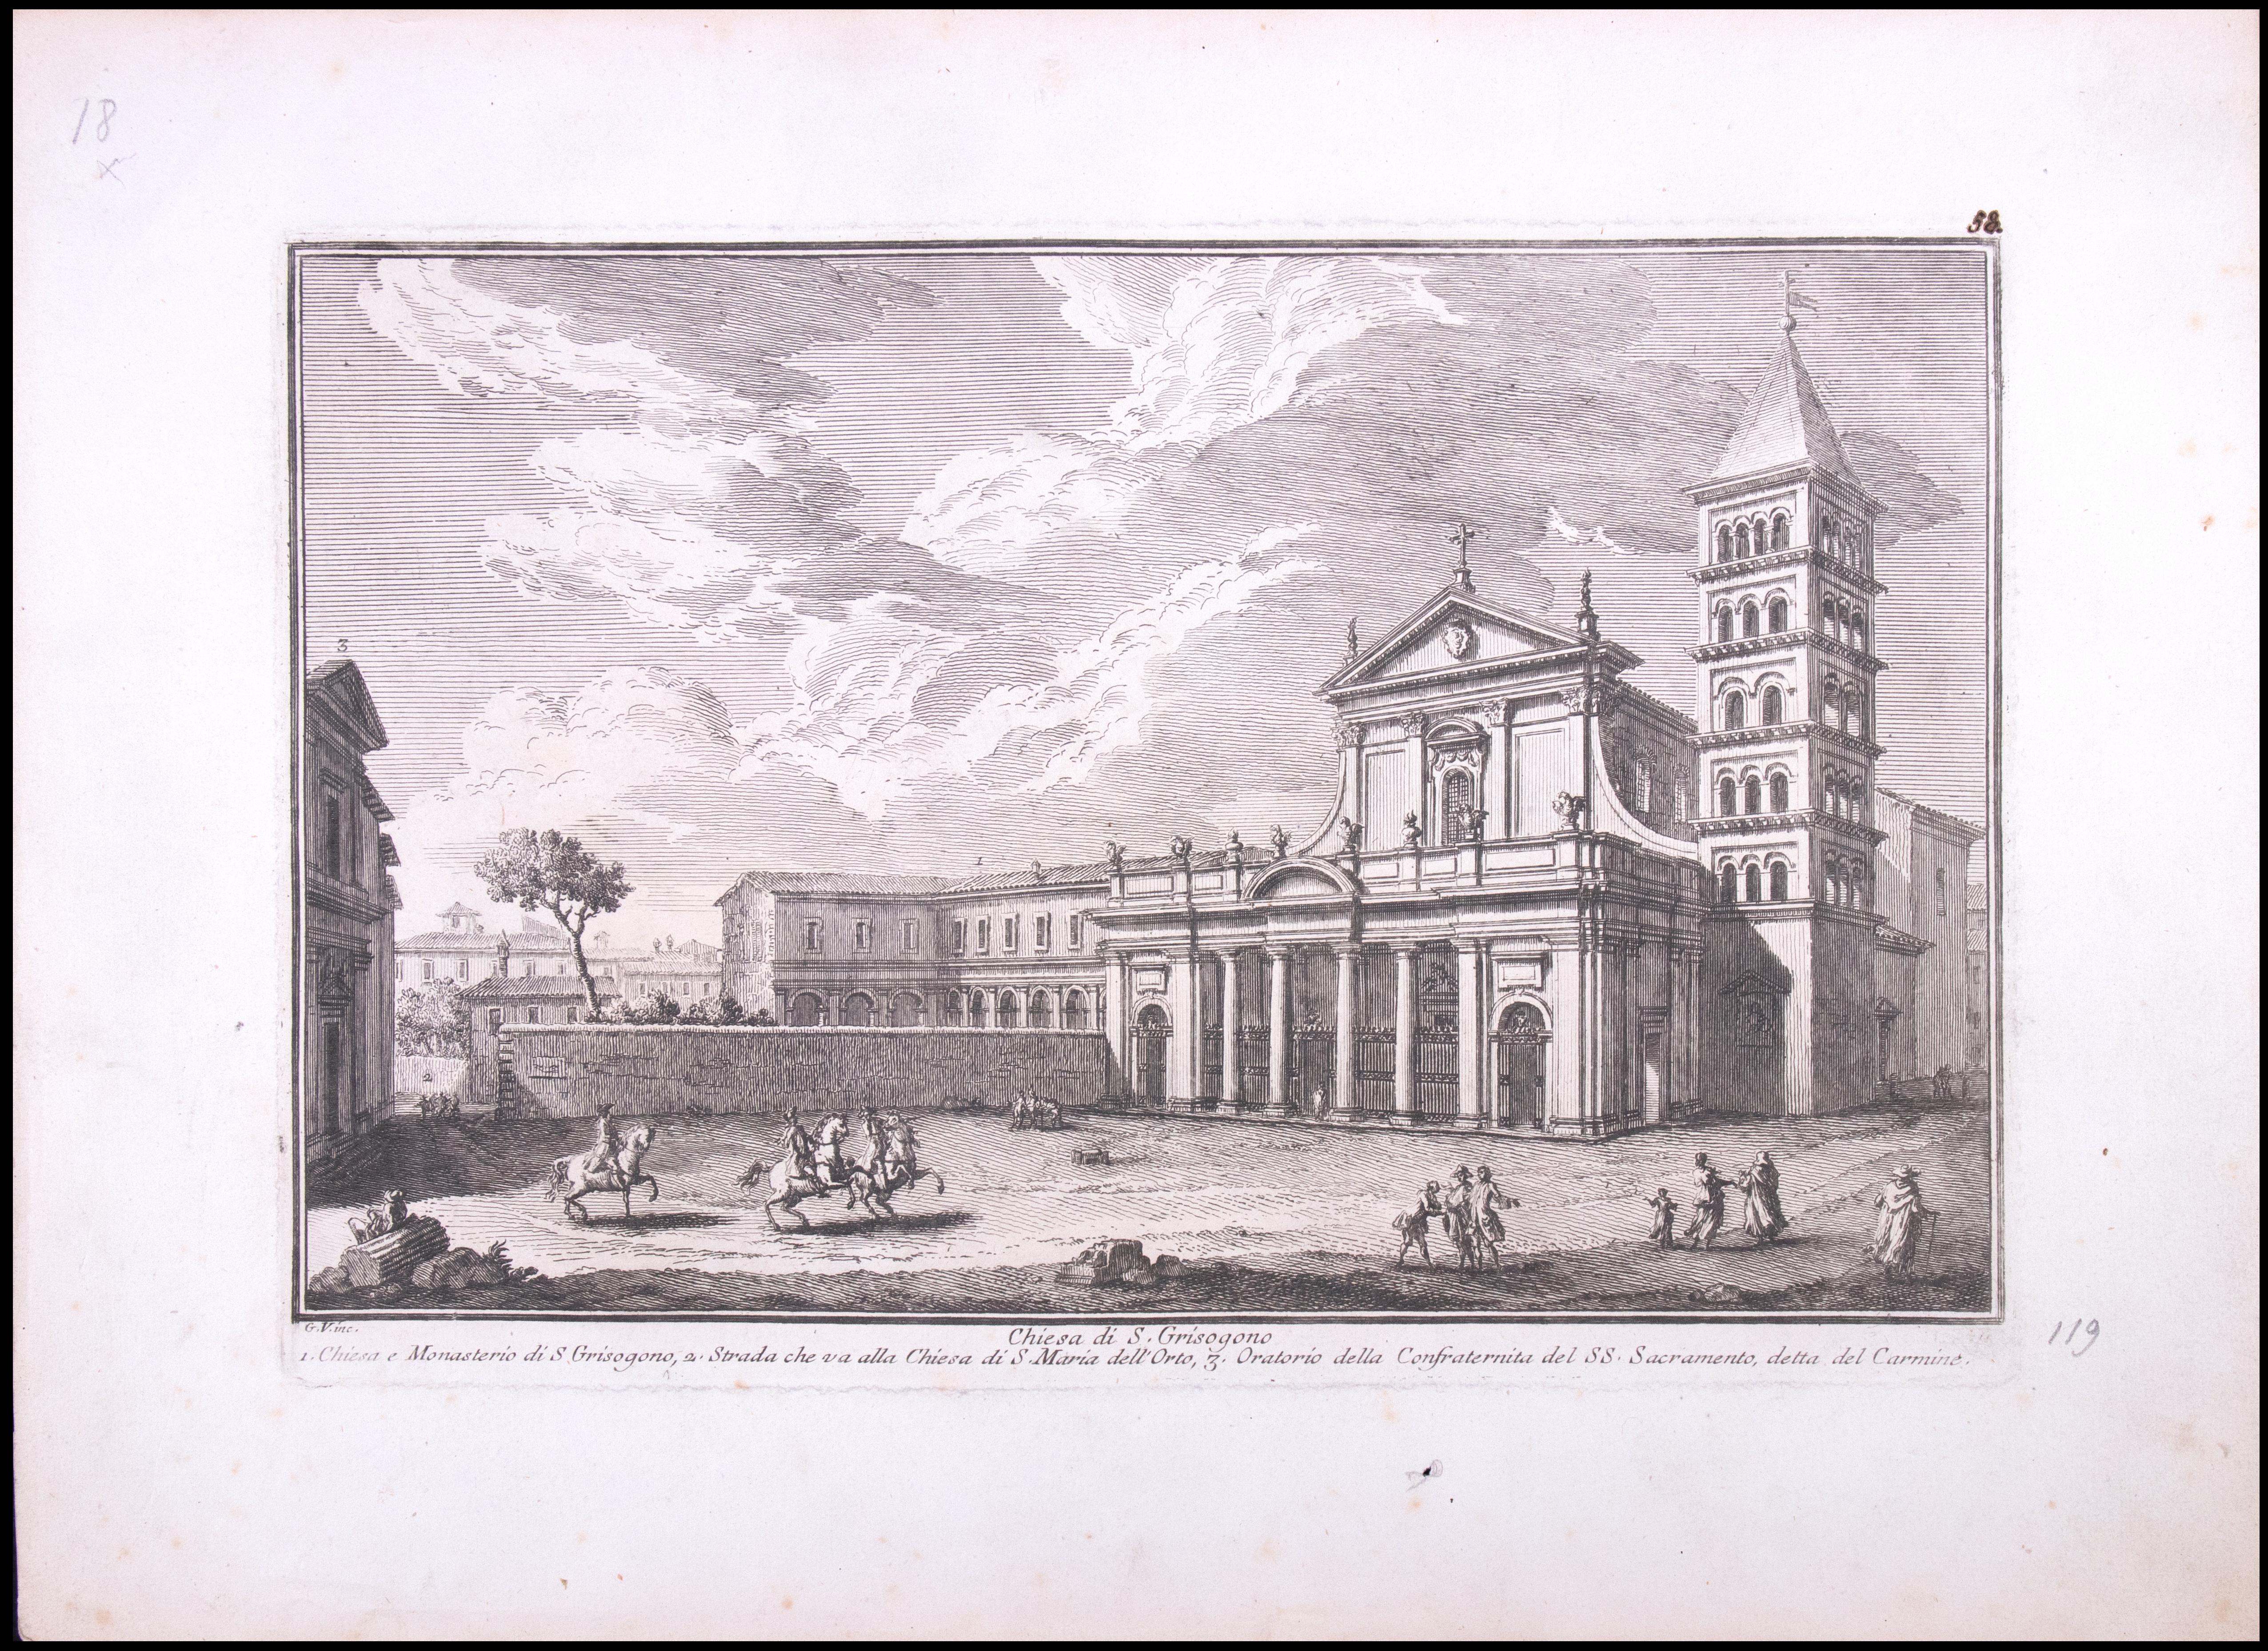 Chiesa di S. Grisogone ist eine Original-Radierung aus dem späten 18. Jahrhundert von Giuseppe Vasi.

Signiert und betitelt am unteren Rand der Platte. 

Gute Bedingungen bis auf die verbrauchten Ränder.

Giuseppe Vasi  (Corleone, 1710 - Rom, 1782)